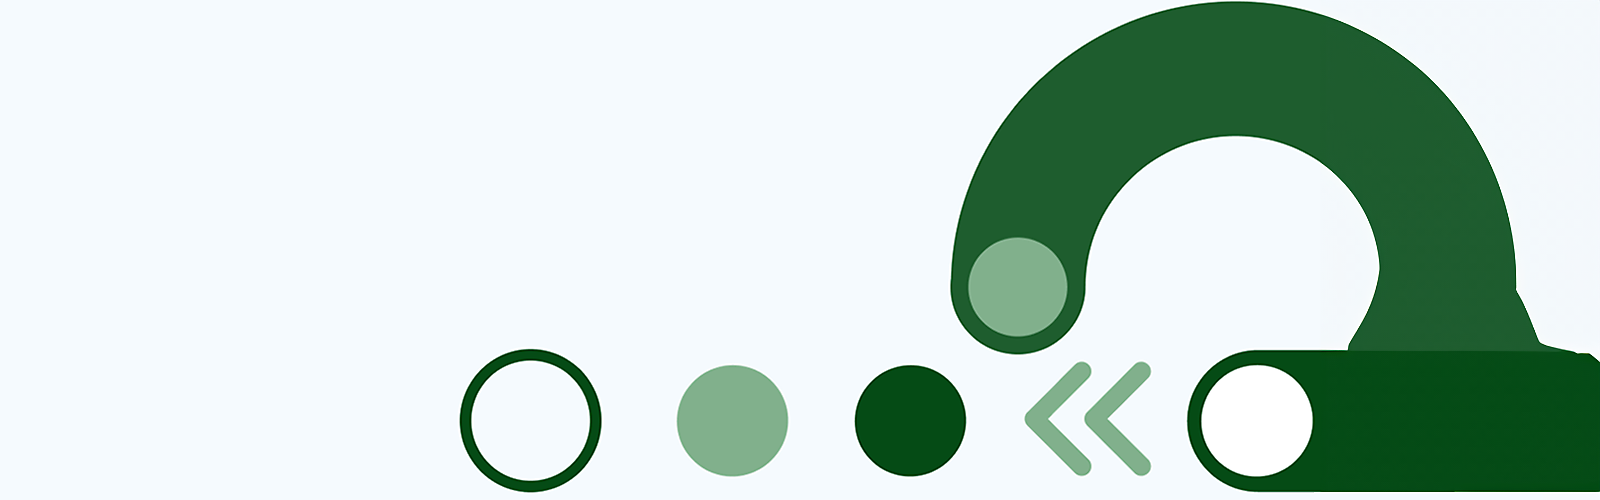 Abstrakte grüne Formen und Linien auf weißem Hintergrund.